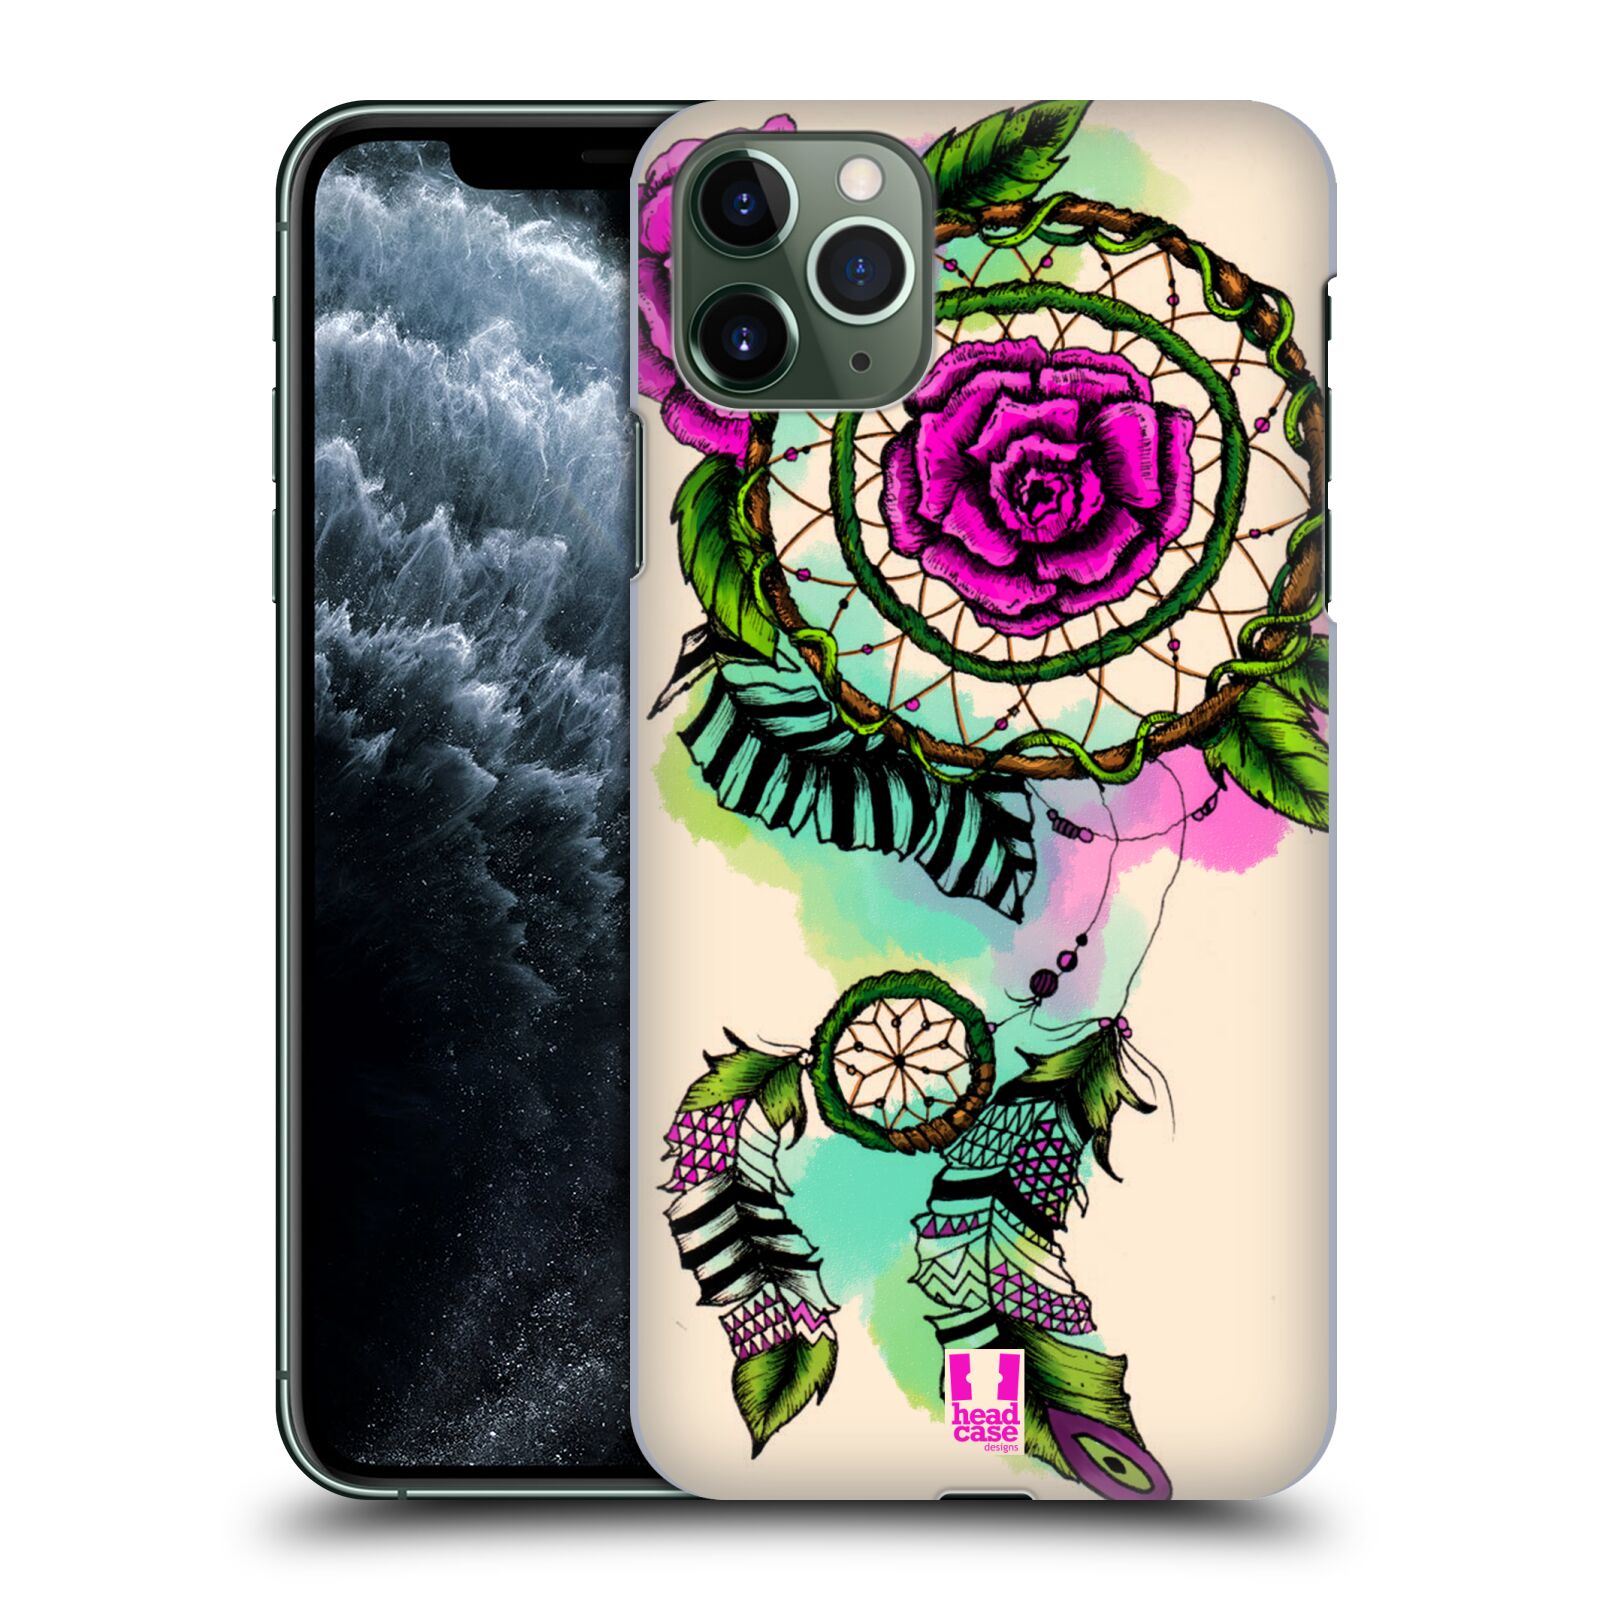 Pouzdro na mobil Apple Iphone 11 PRO MAX - HEAD CASE - vzor Květy lapač snů růže